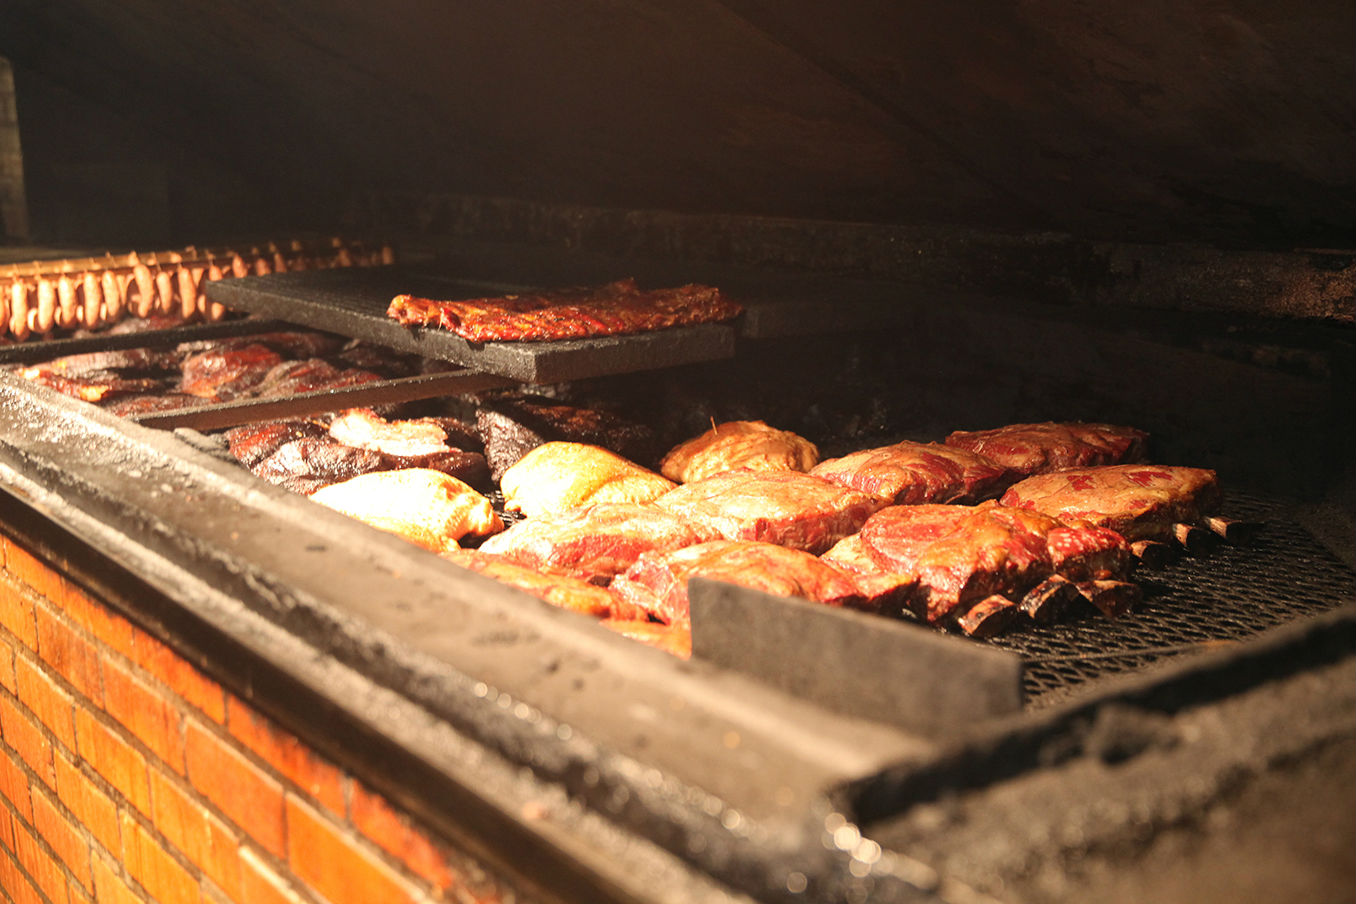 Black's BBQ in Lockhart, TX